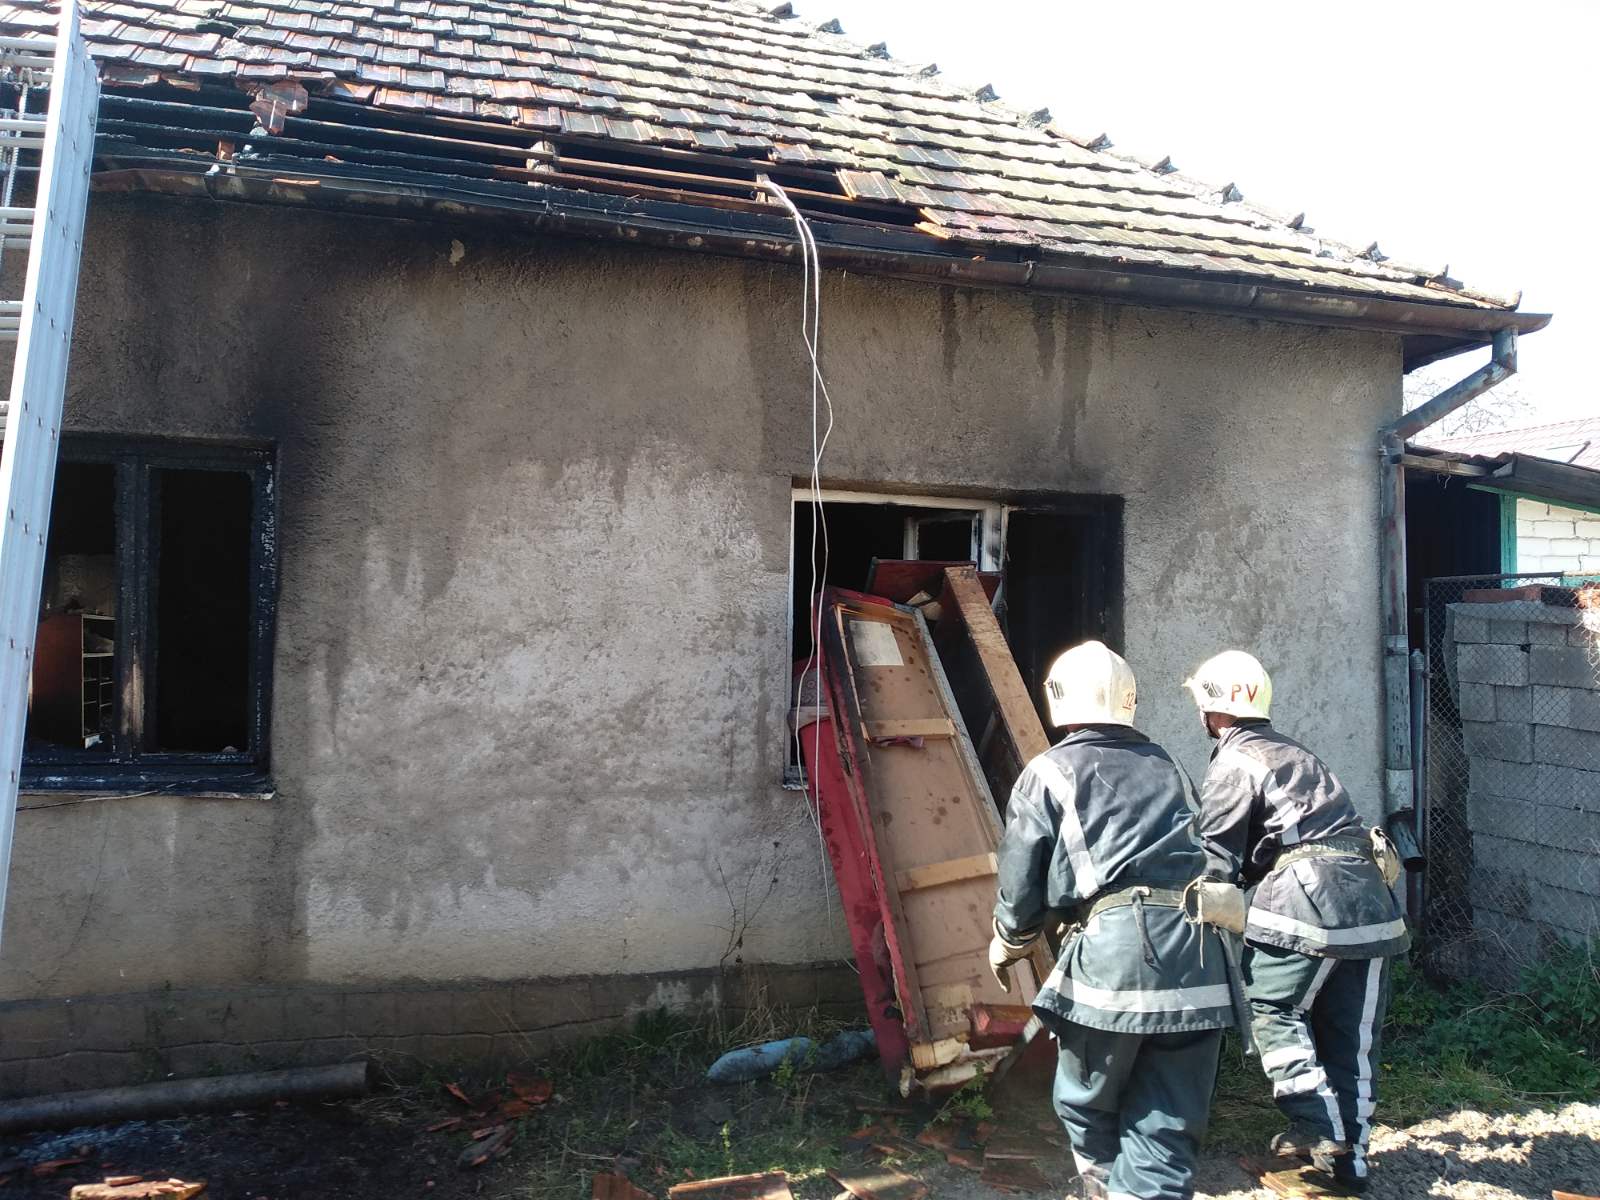 11 апреля в 14:30 к спасателям Береговая поступило сообщение о пожаре в жилом доме на вул. Калчеї, что в районном центре. 